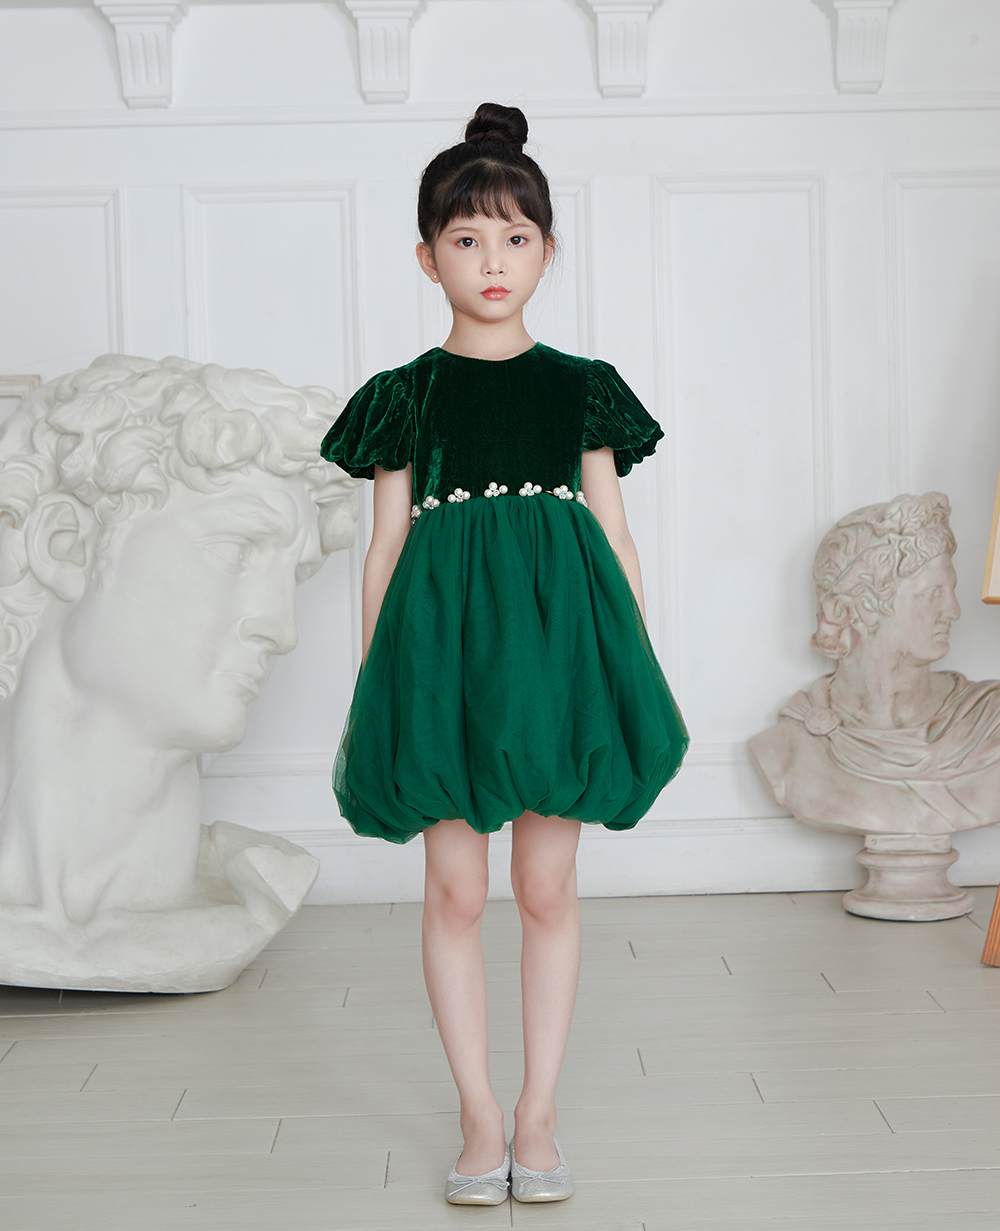 Emerald Green Velvet Top and Tuelle Skirt Dress